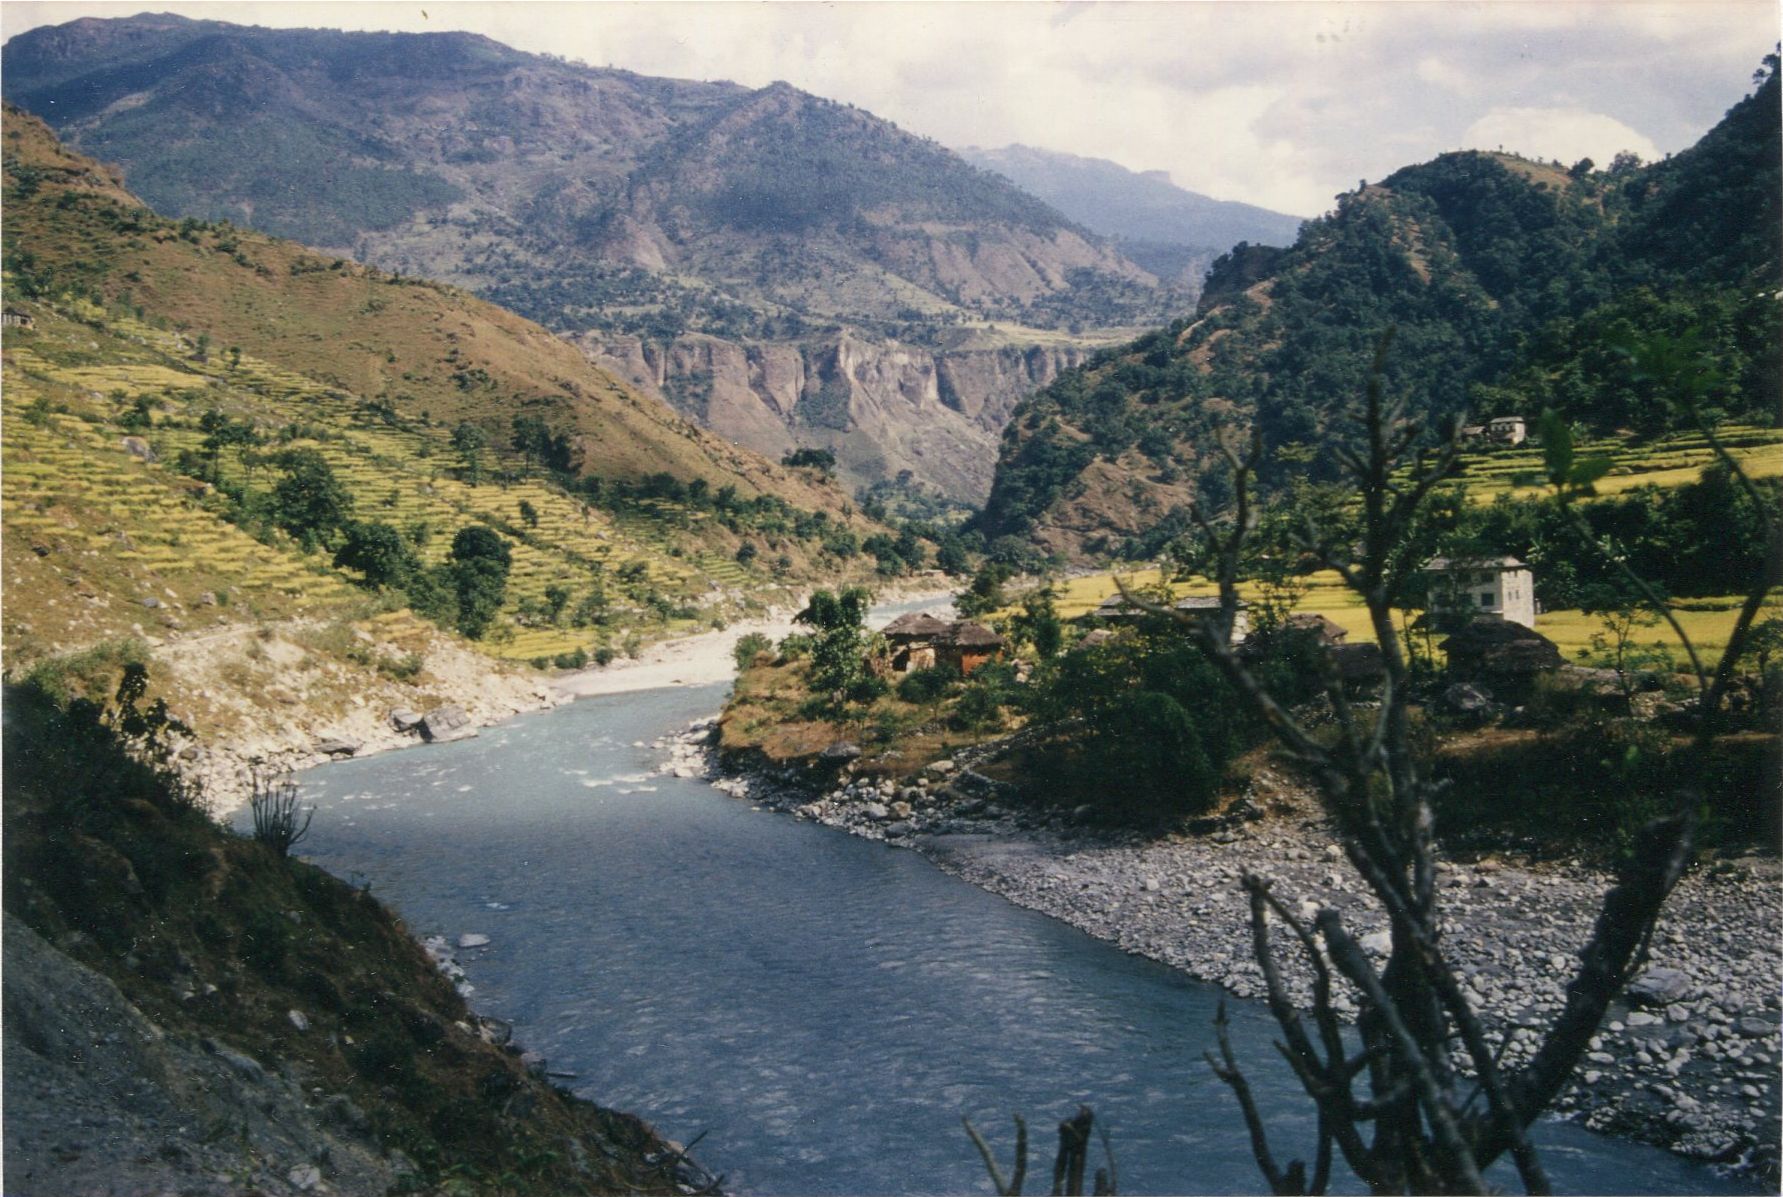 Kali Gandaki on approach to Beni